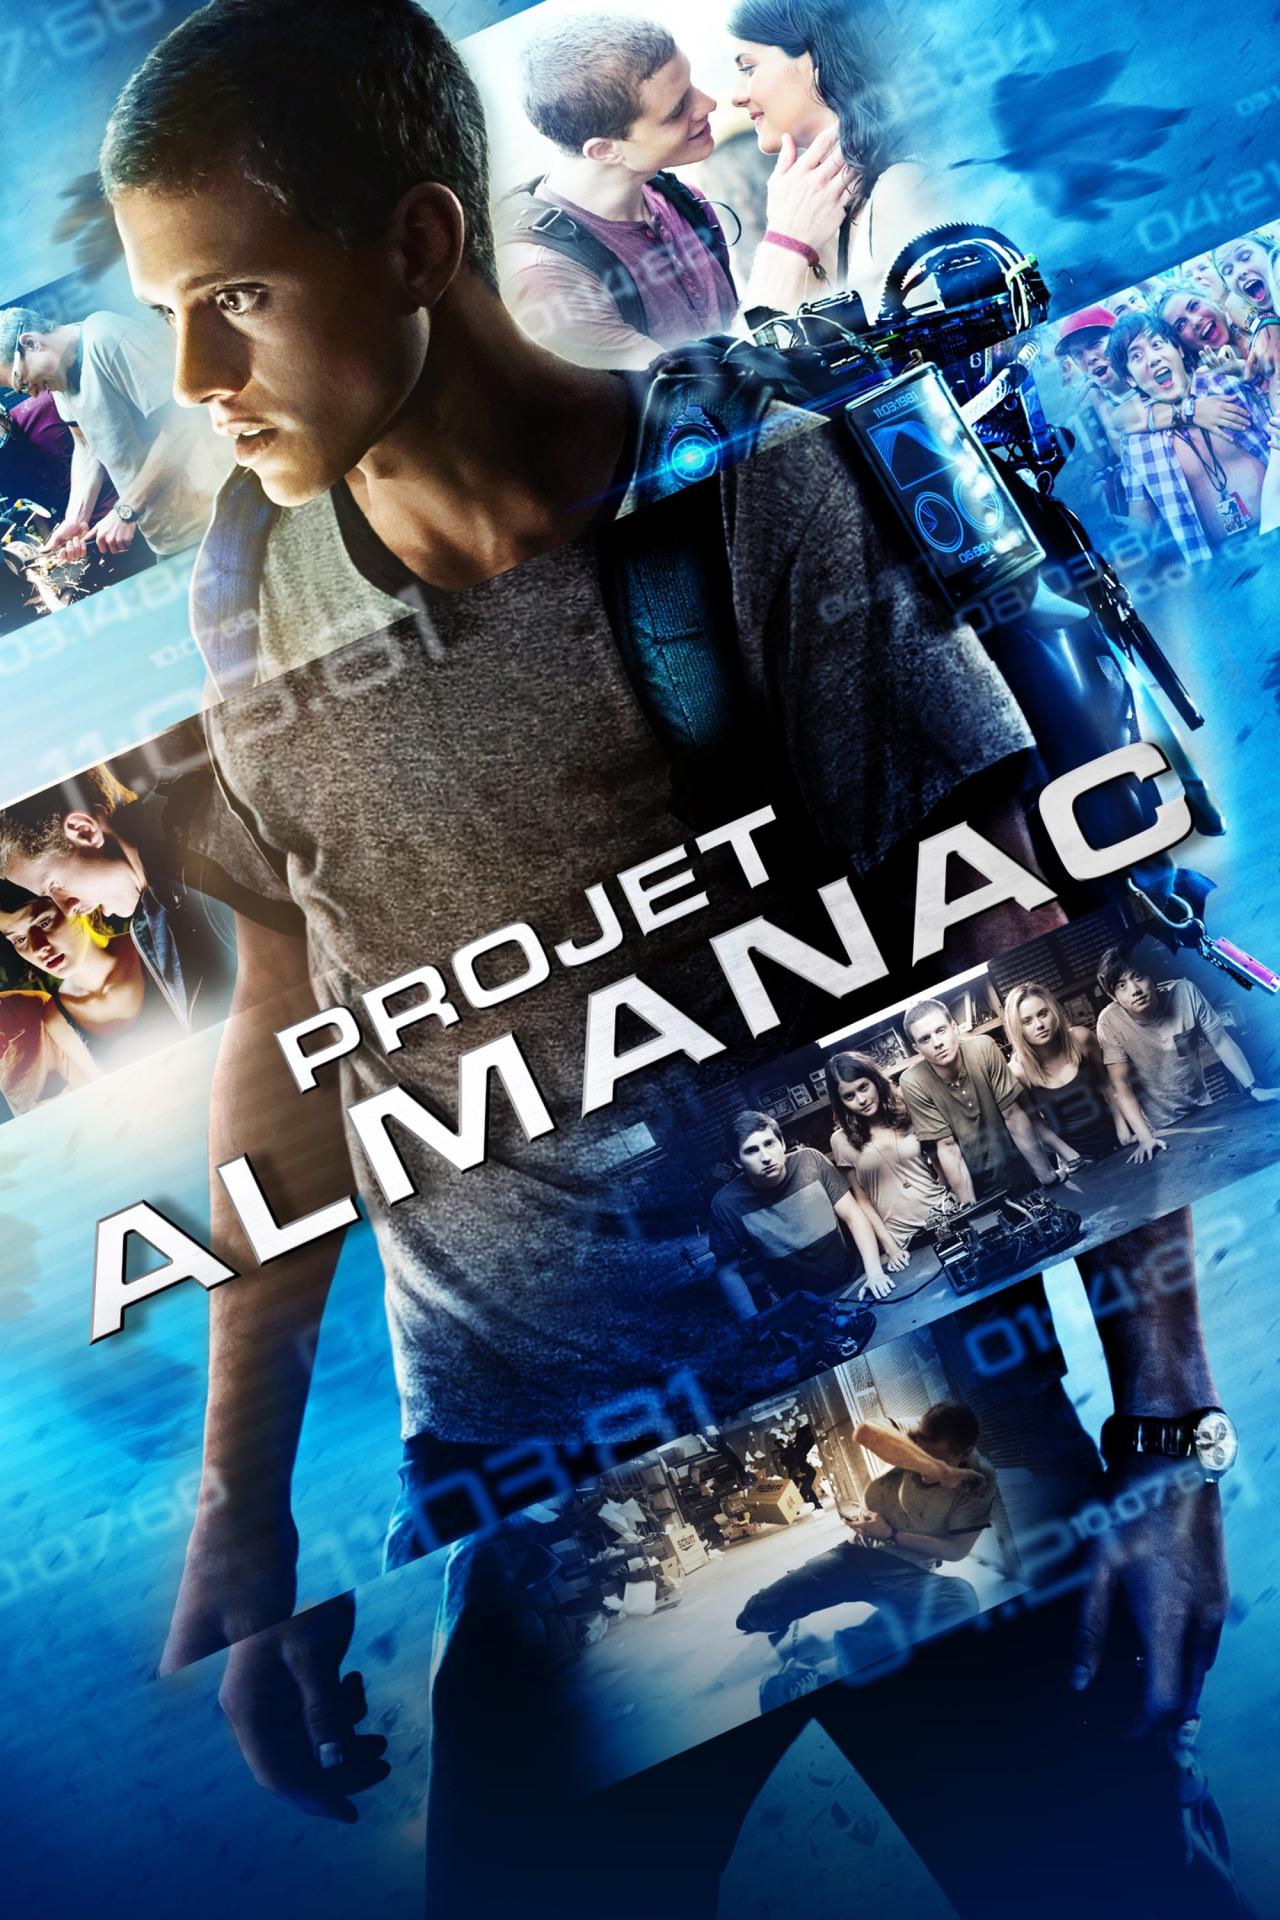 Projet Almanac est-il disponible sur Netflix ou autre ?